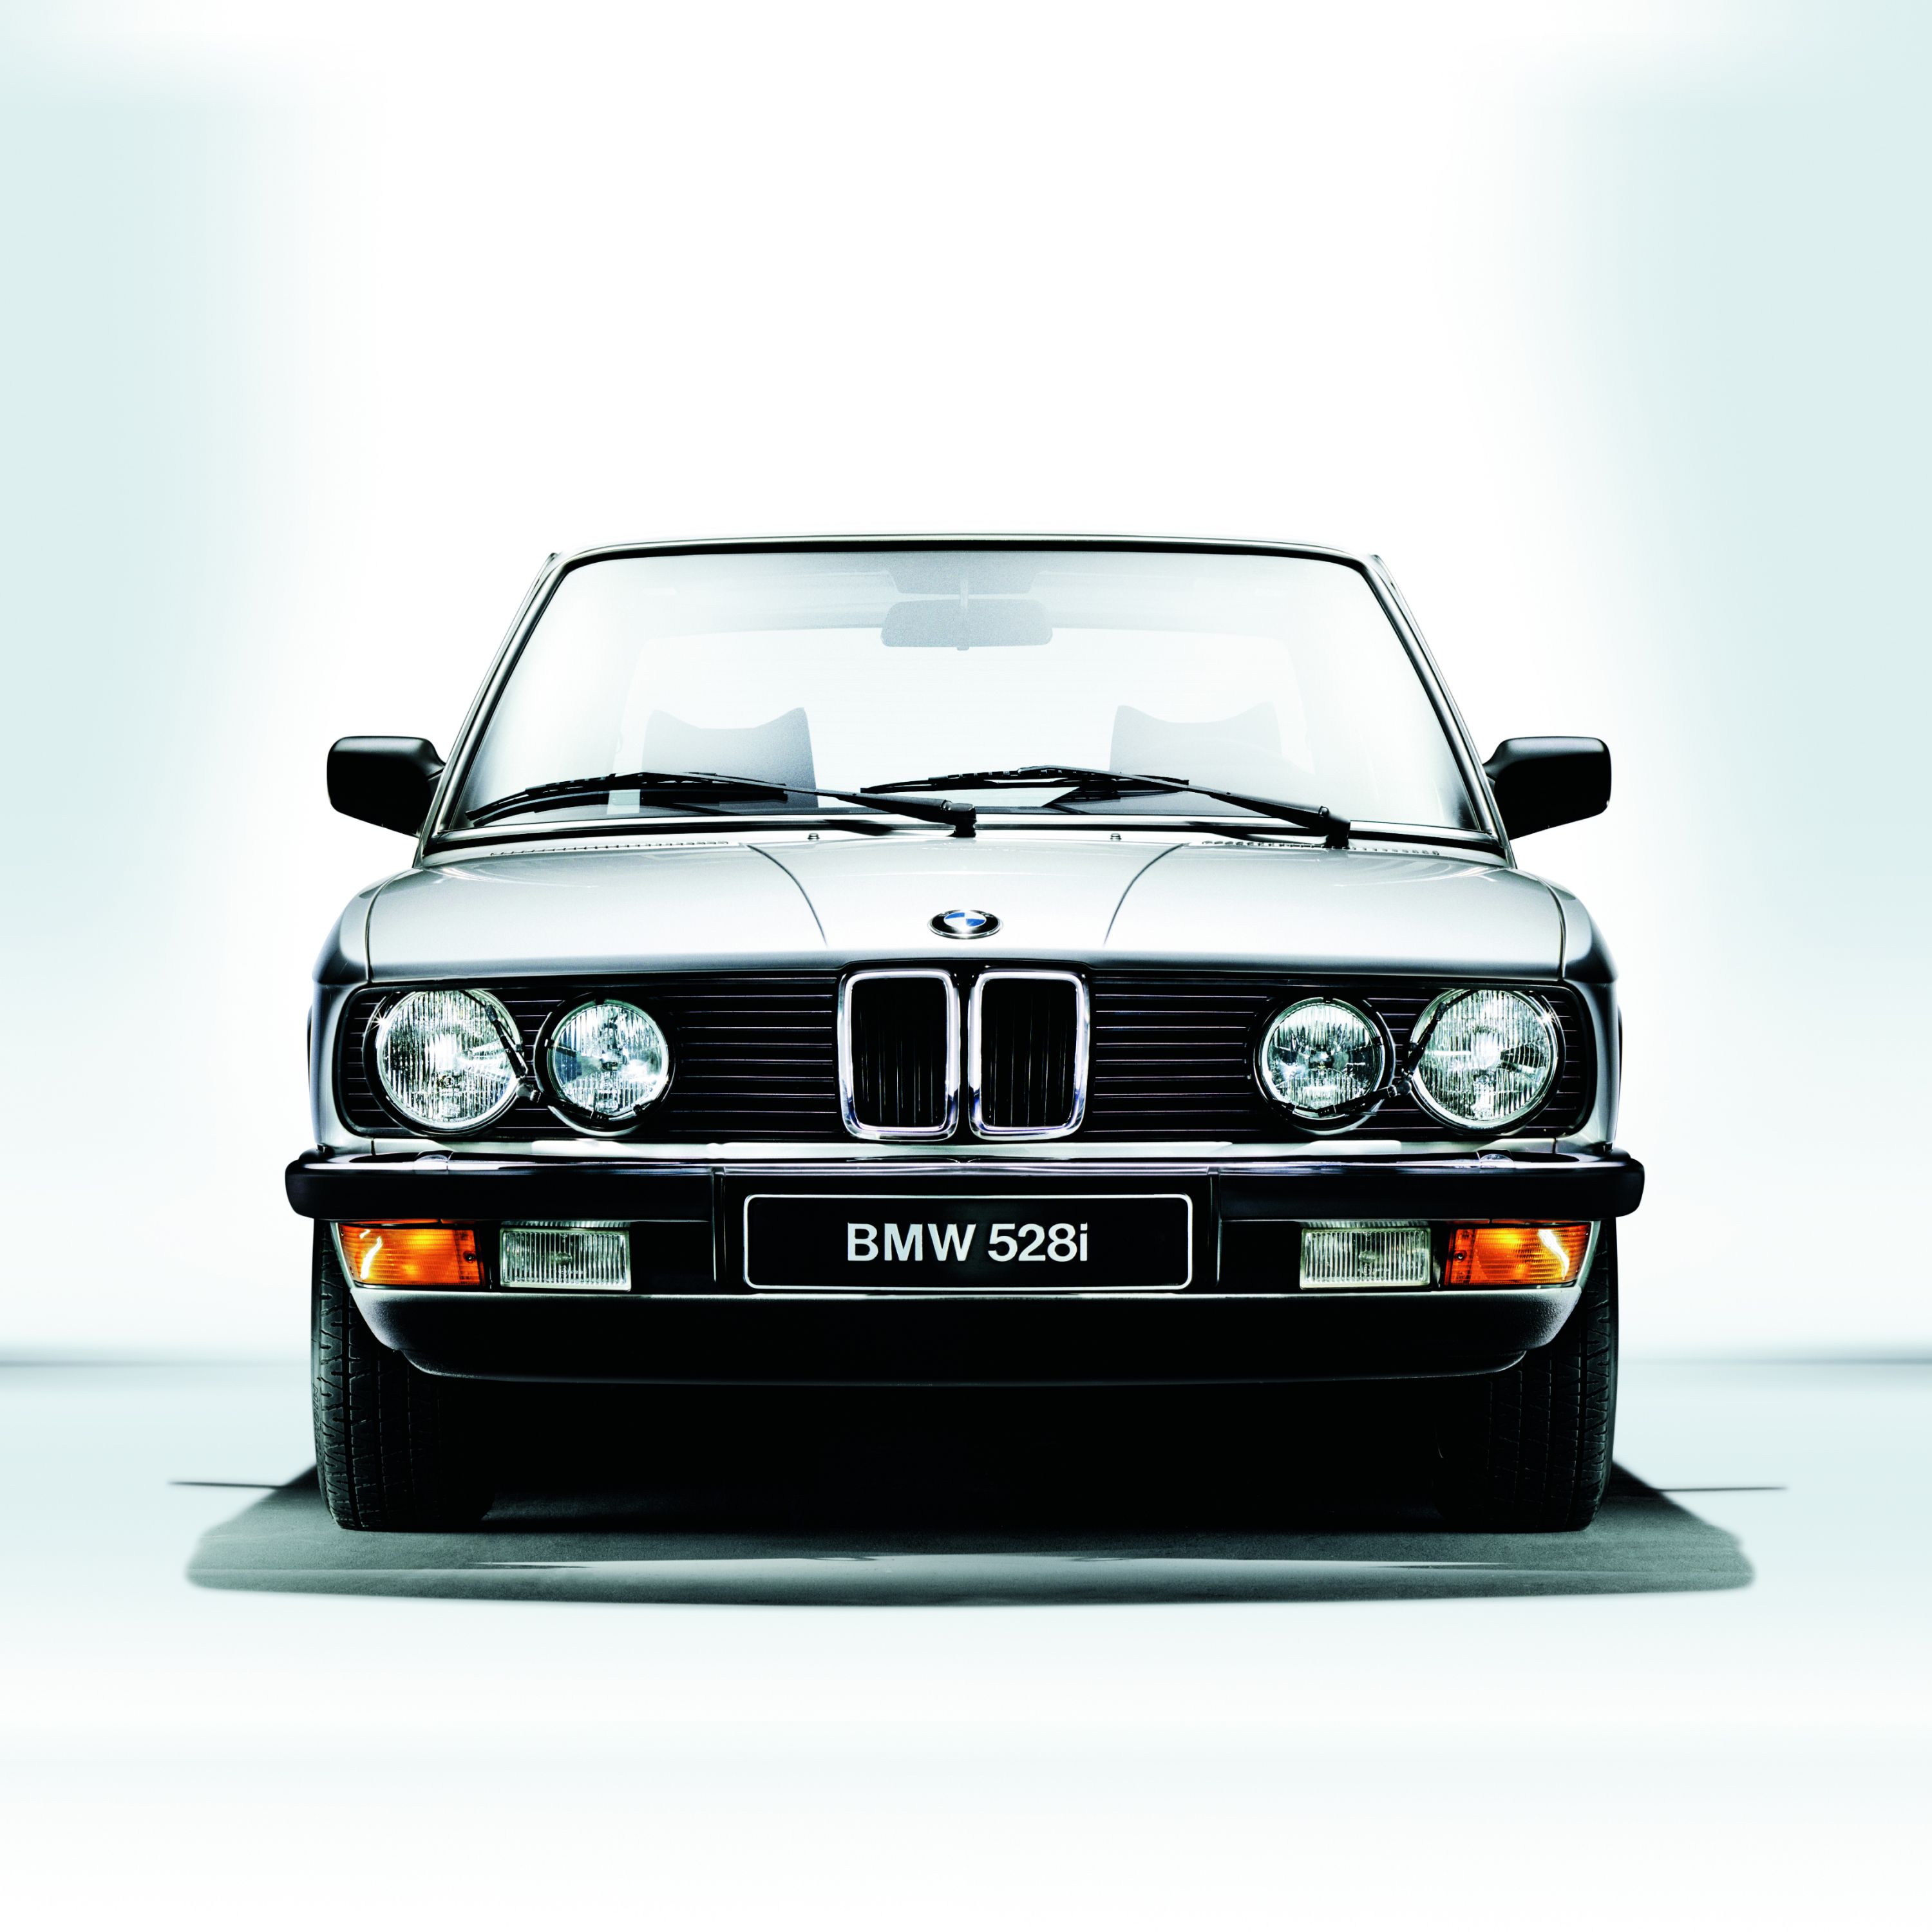 Originalni nadomestni deli BMW Classic, 2023, klasični nadomestni deli